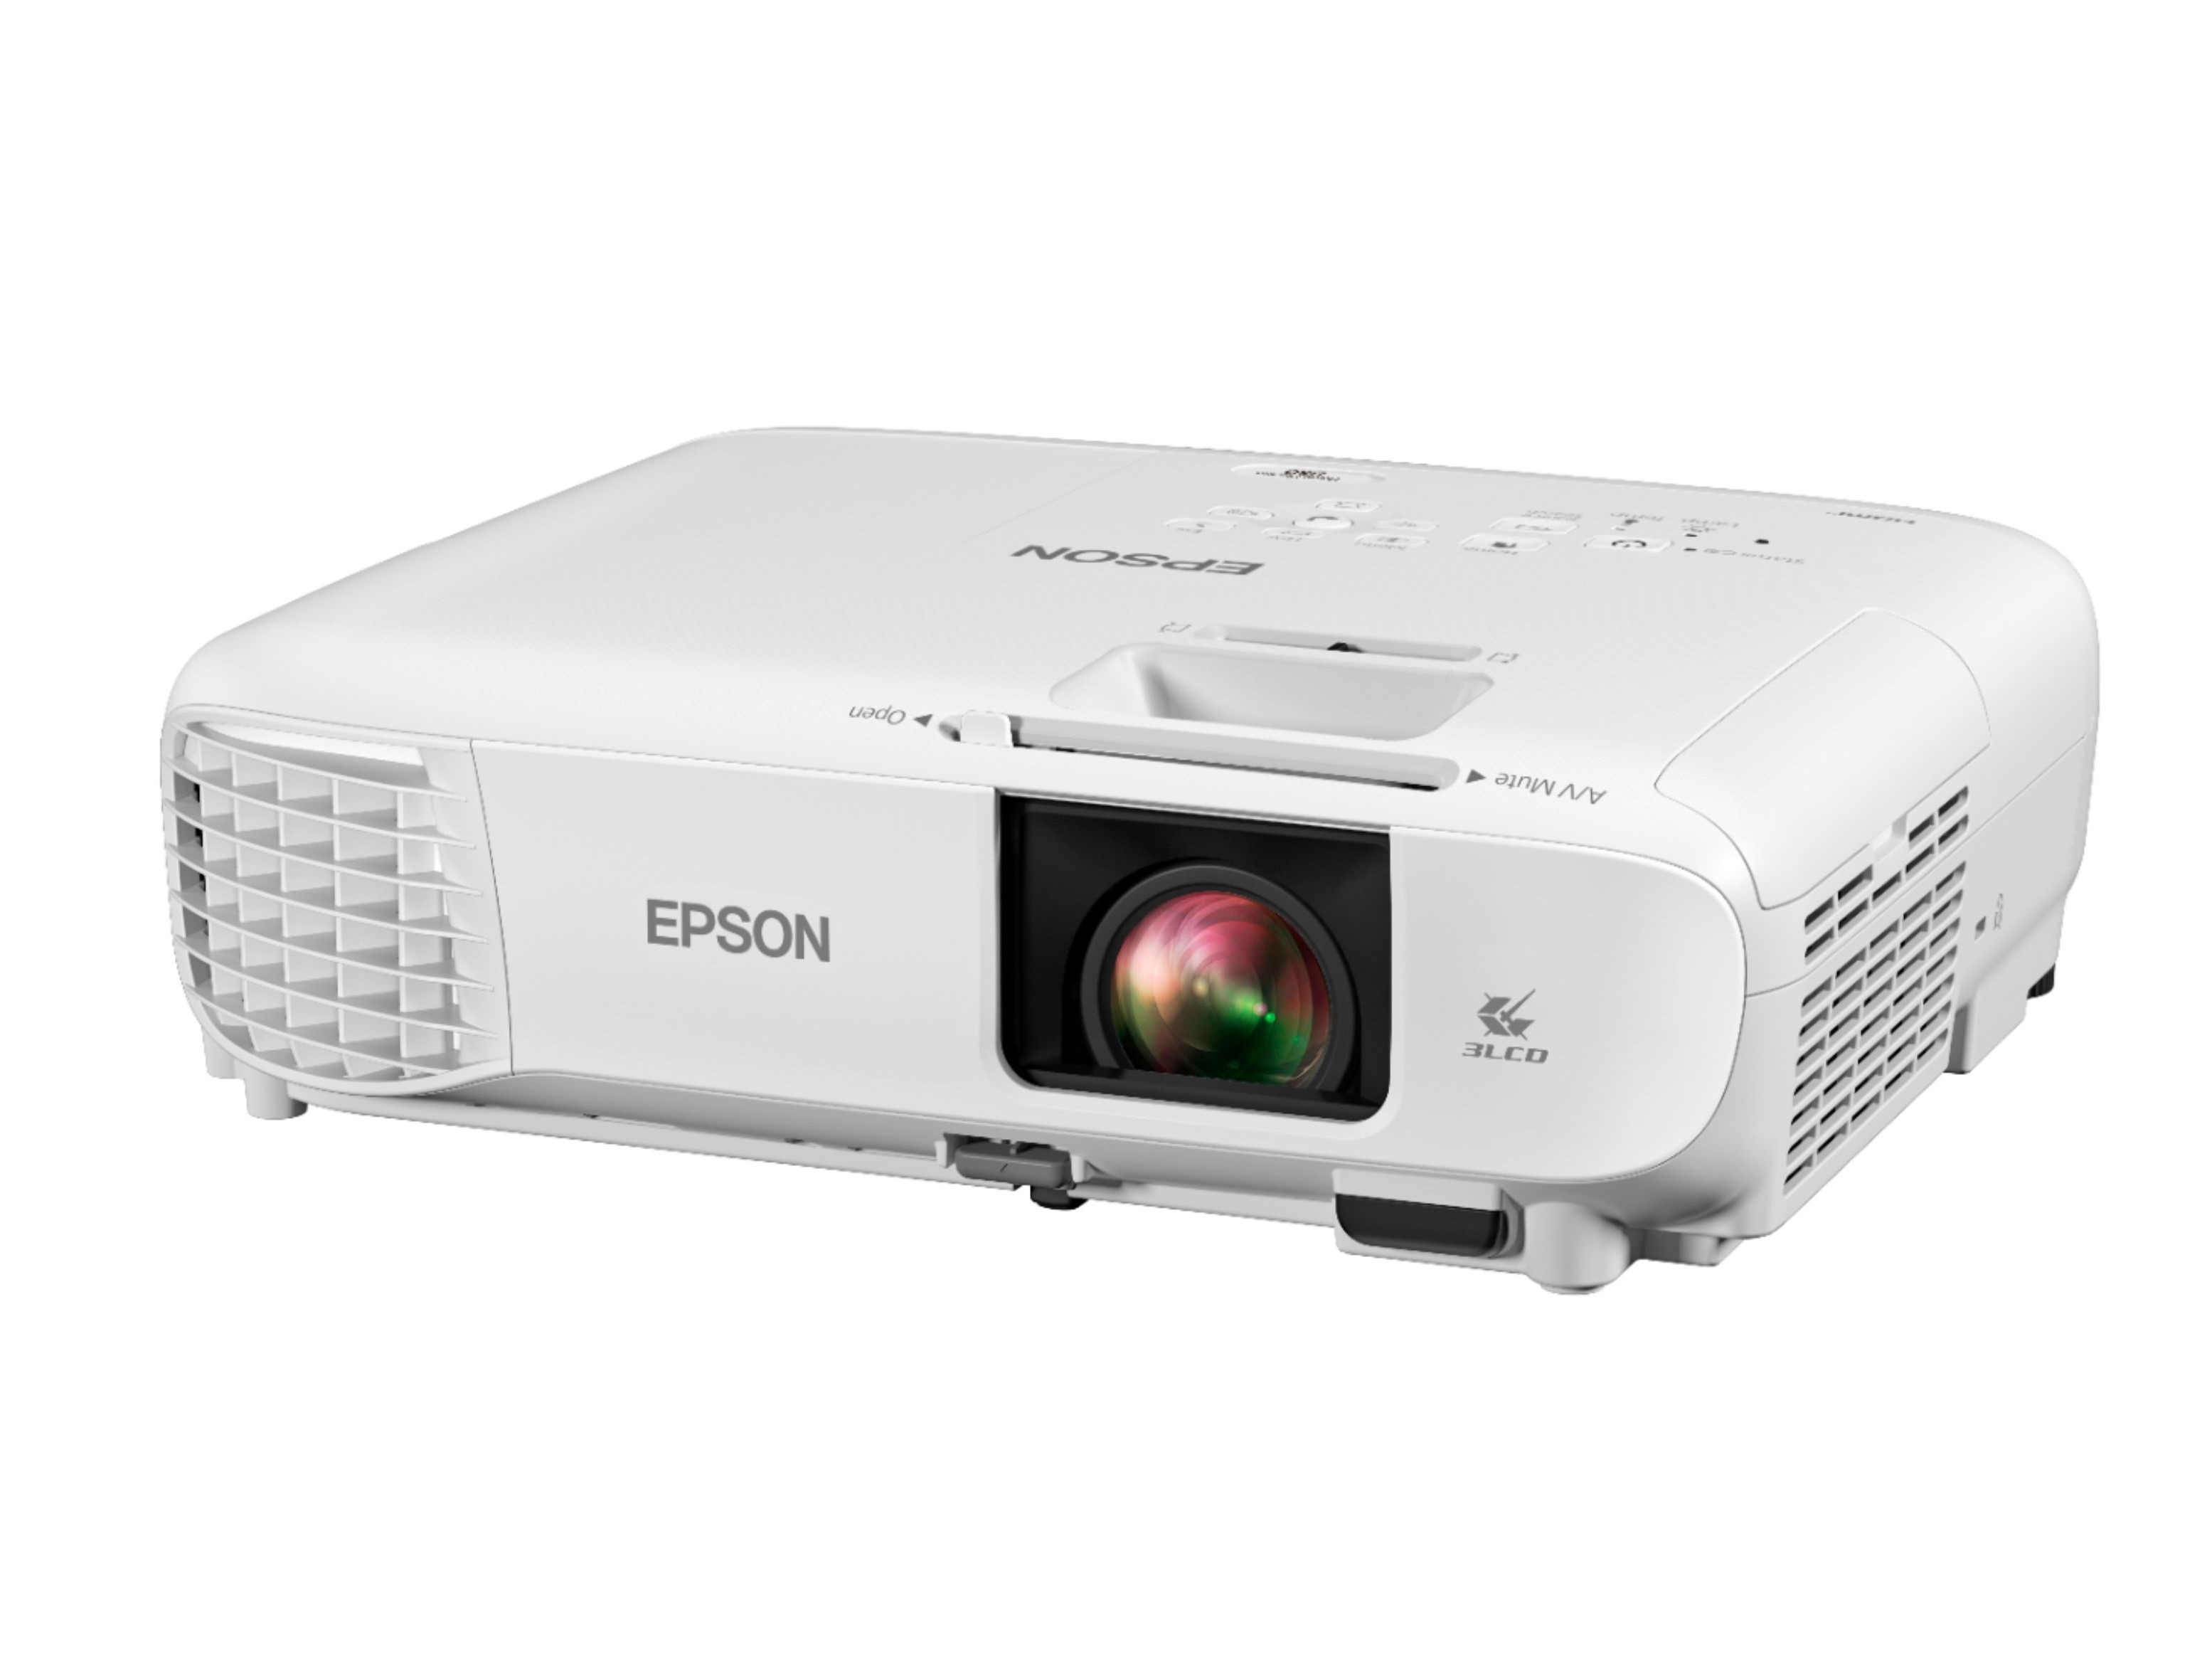 Imagem do projetor Epson Home Cinema 3800 1080P 3LCD.